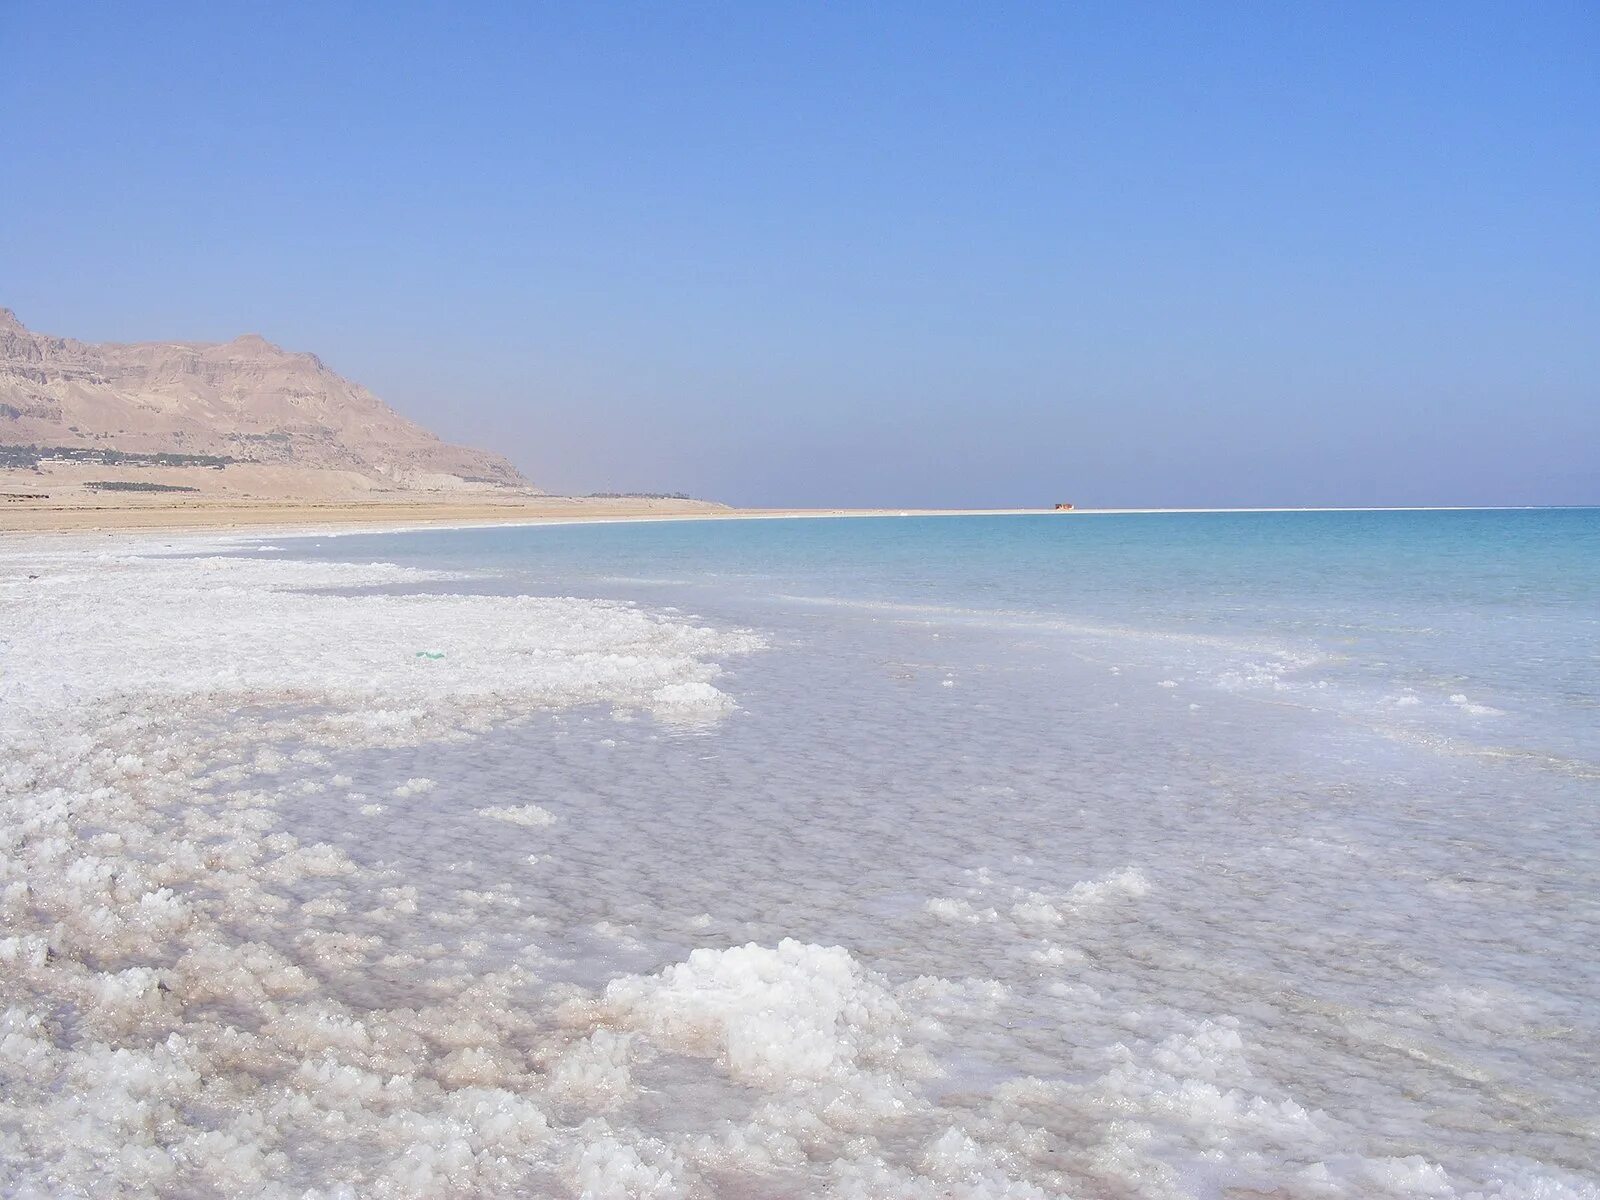 Мертвое море (Dead Sea). Соленое озеро в Израиле.